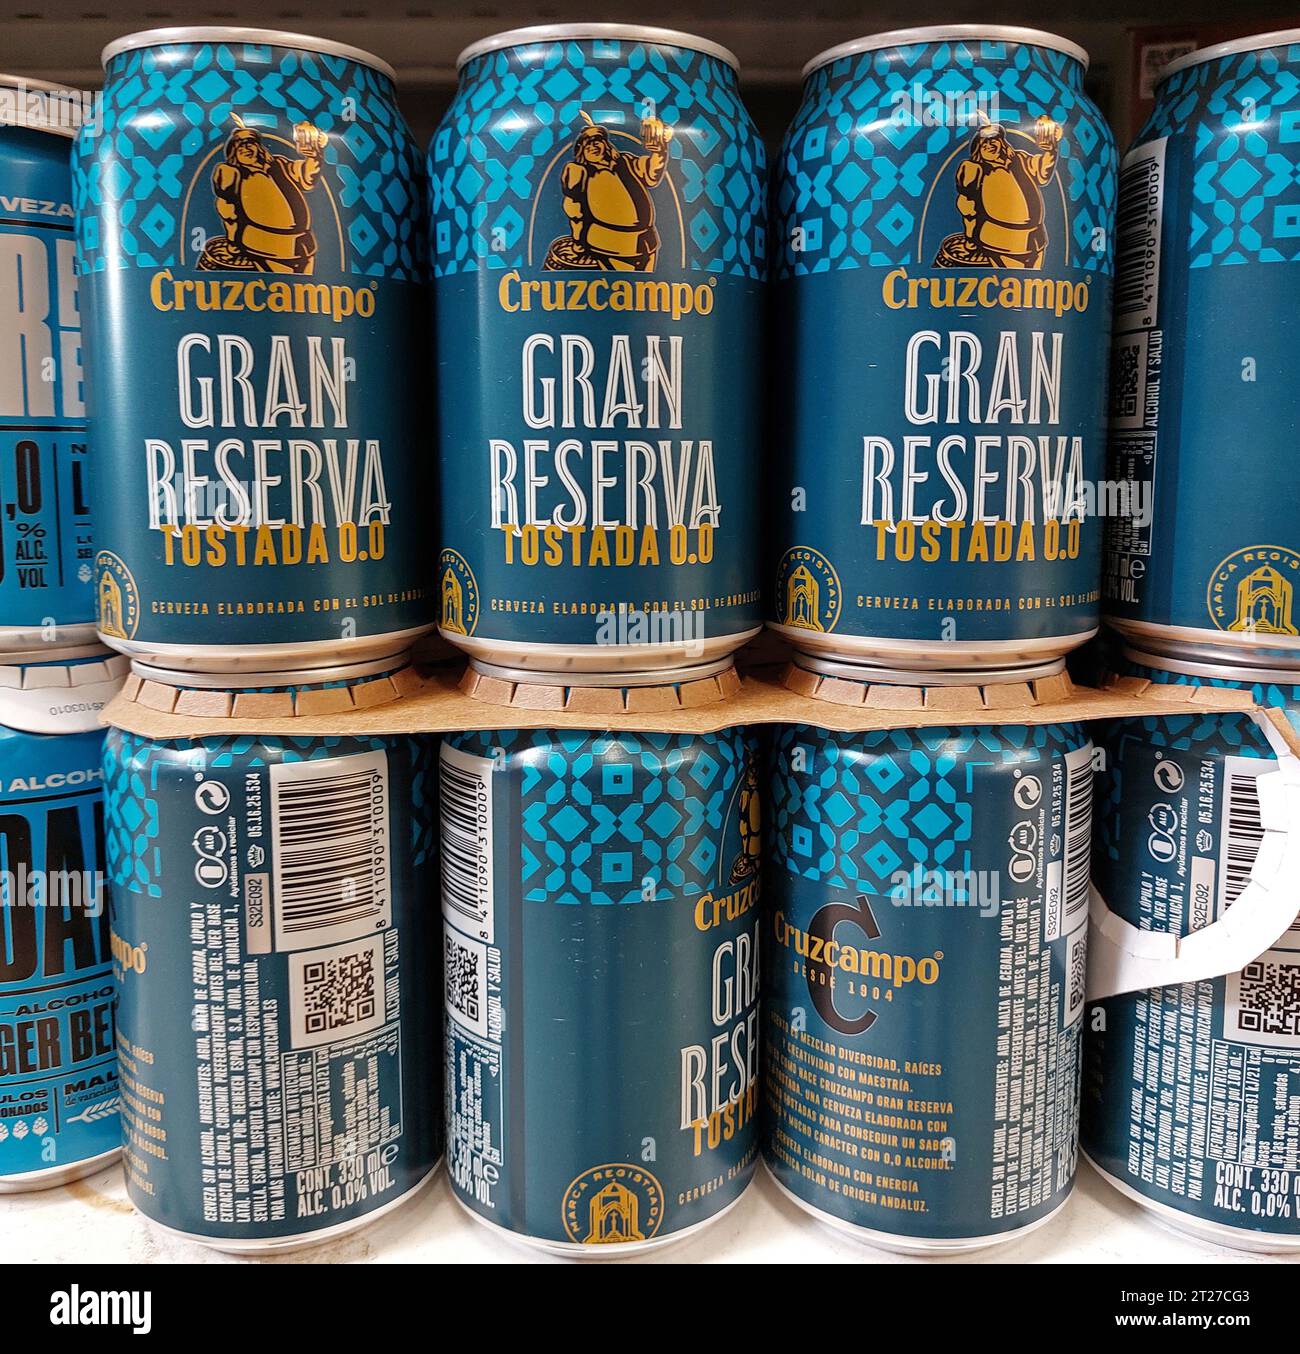 Cruzcampo spagnolo Gran Reserva Tostada 0,0 lattine di birra in un supermercato Foto Stock